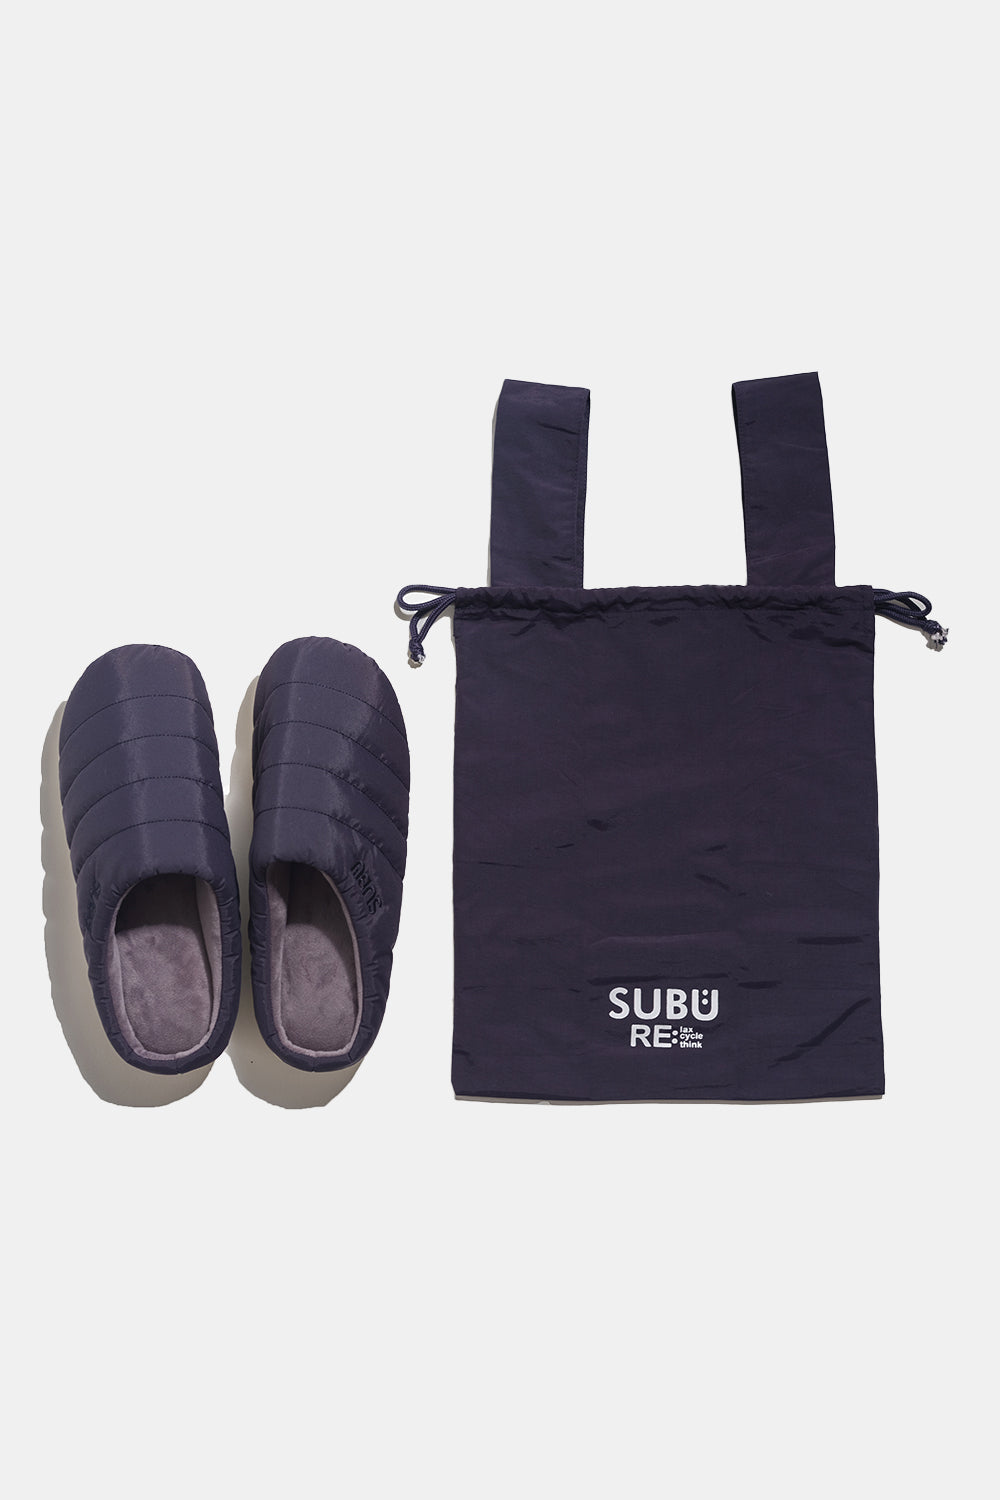 SUBU Indoor Outdoor Re: Slippers (Black)